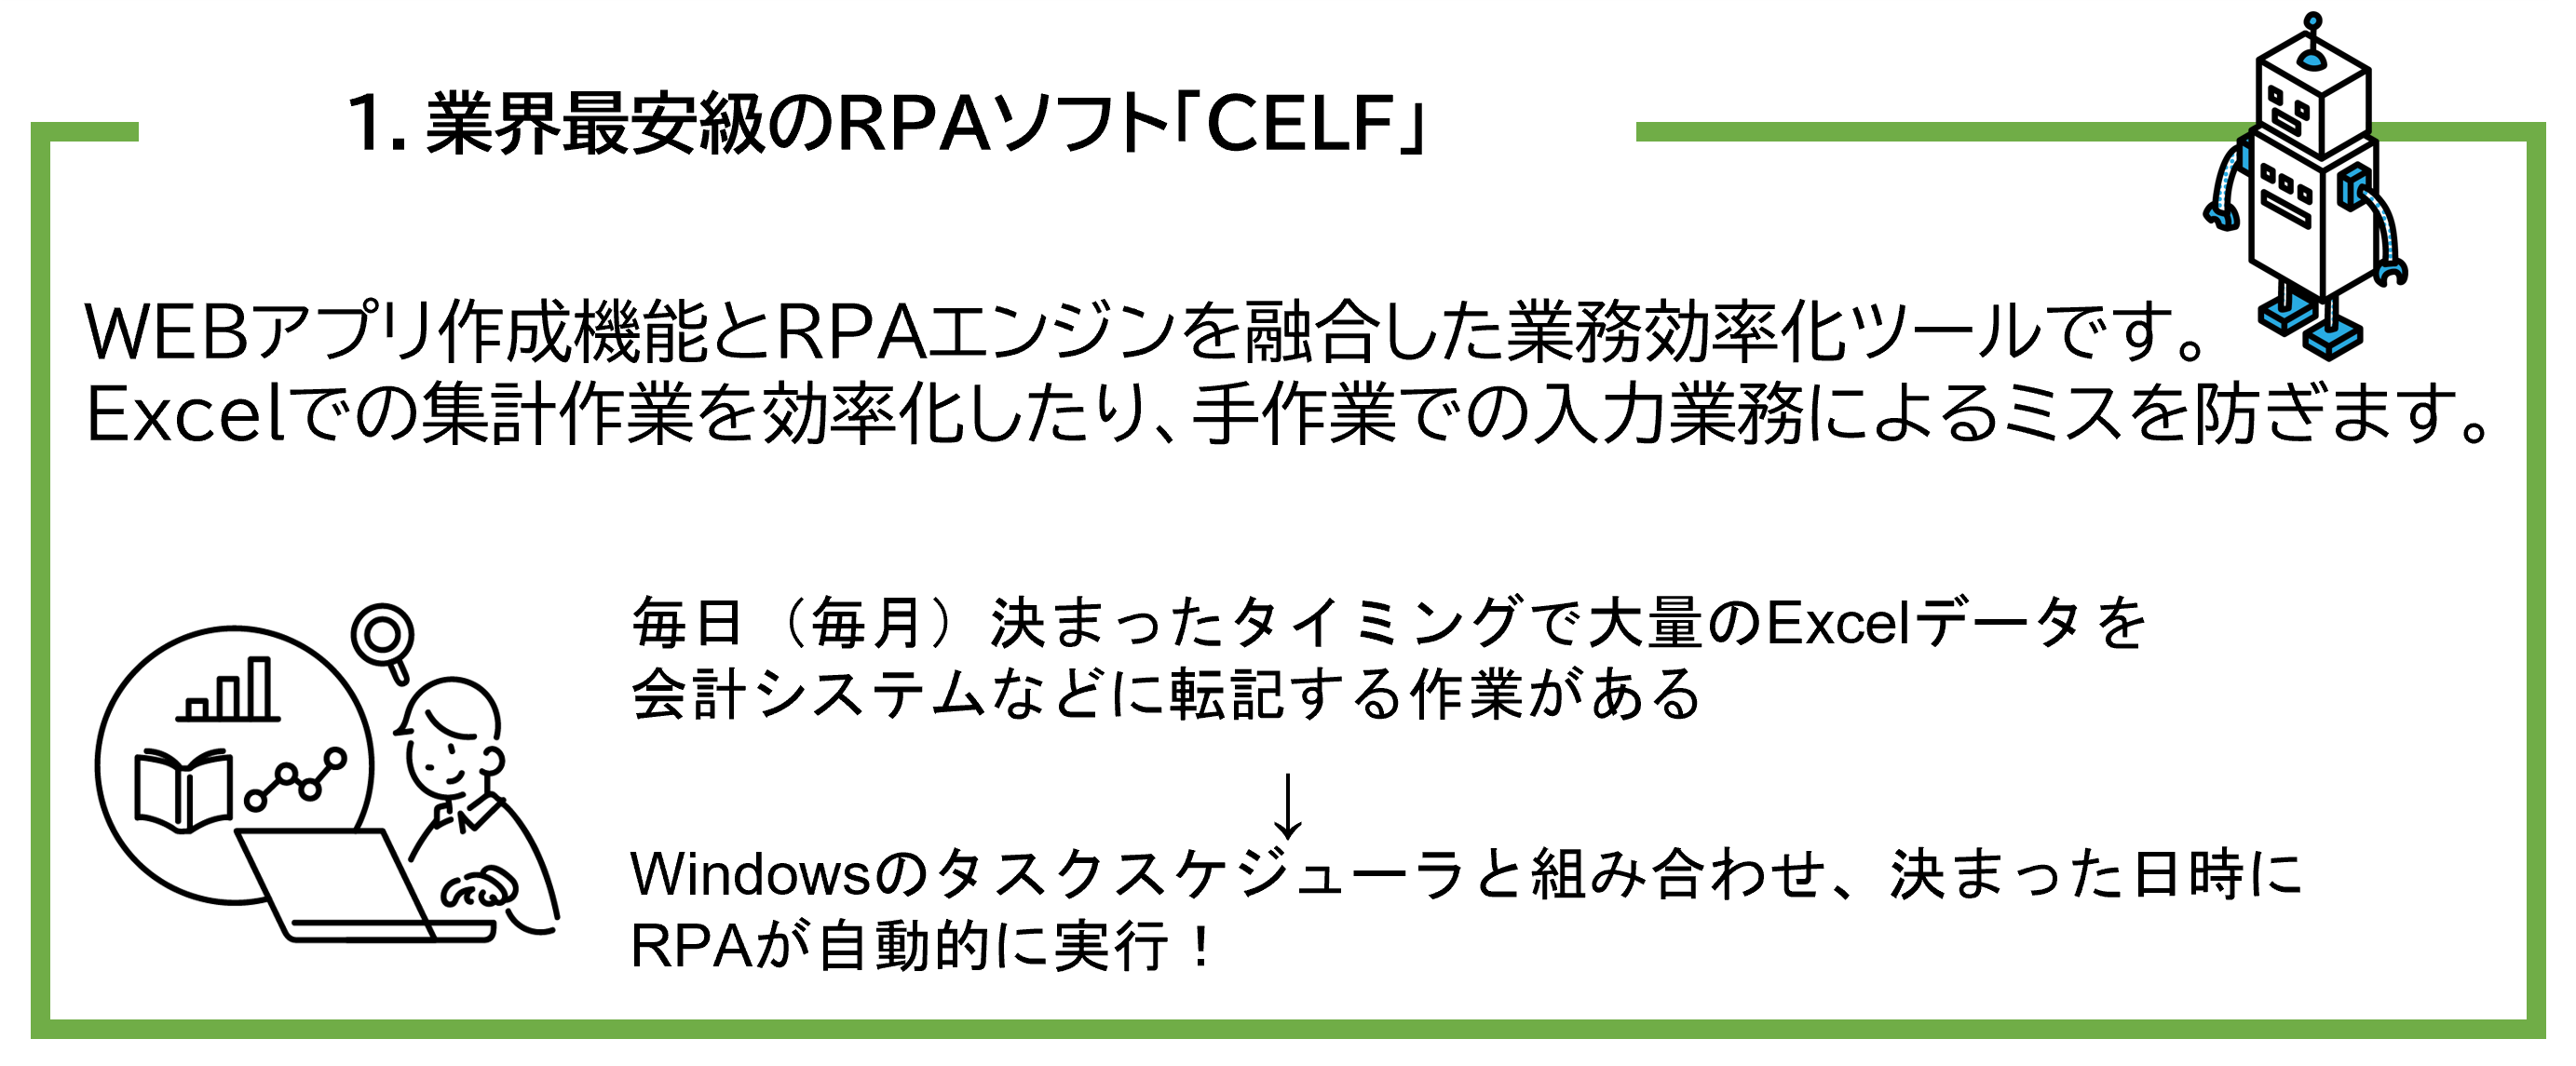 業界最安級のRPAソフト「CELF」